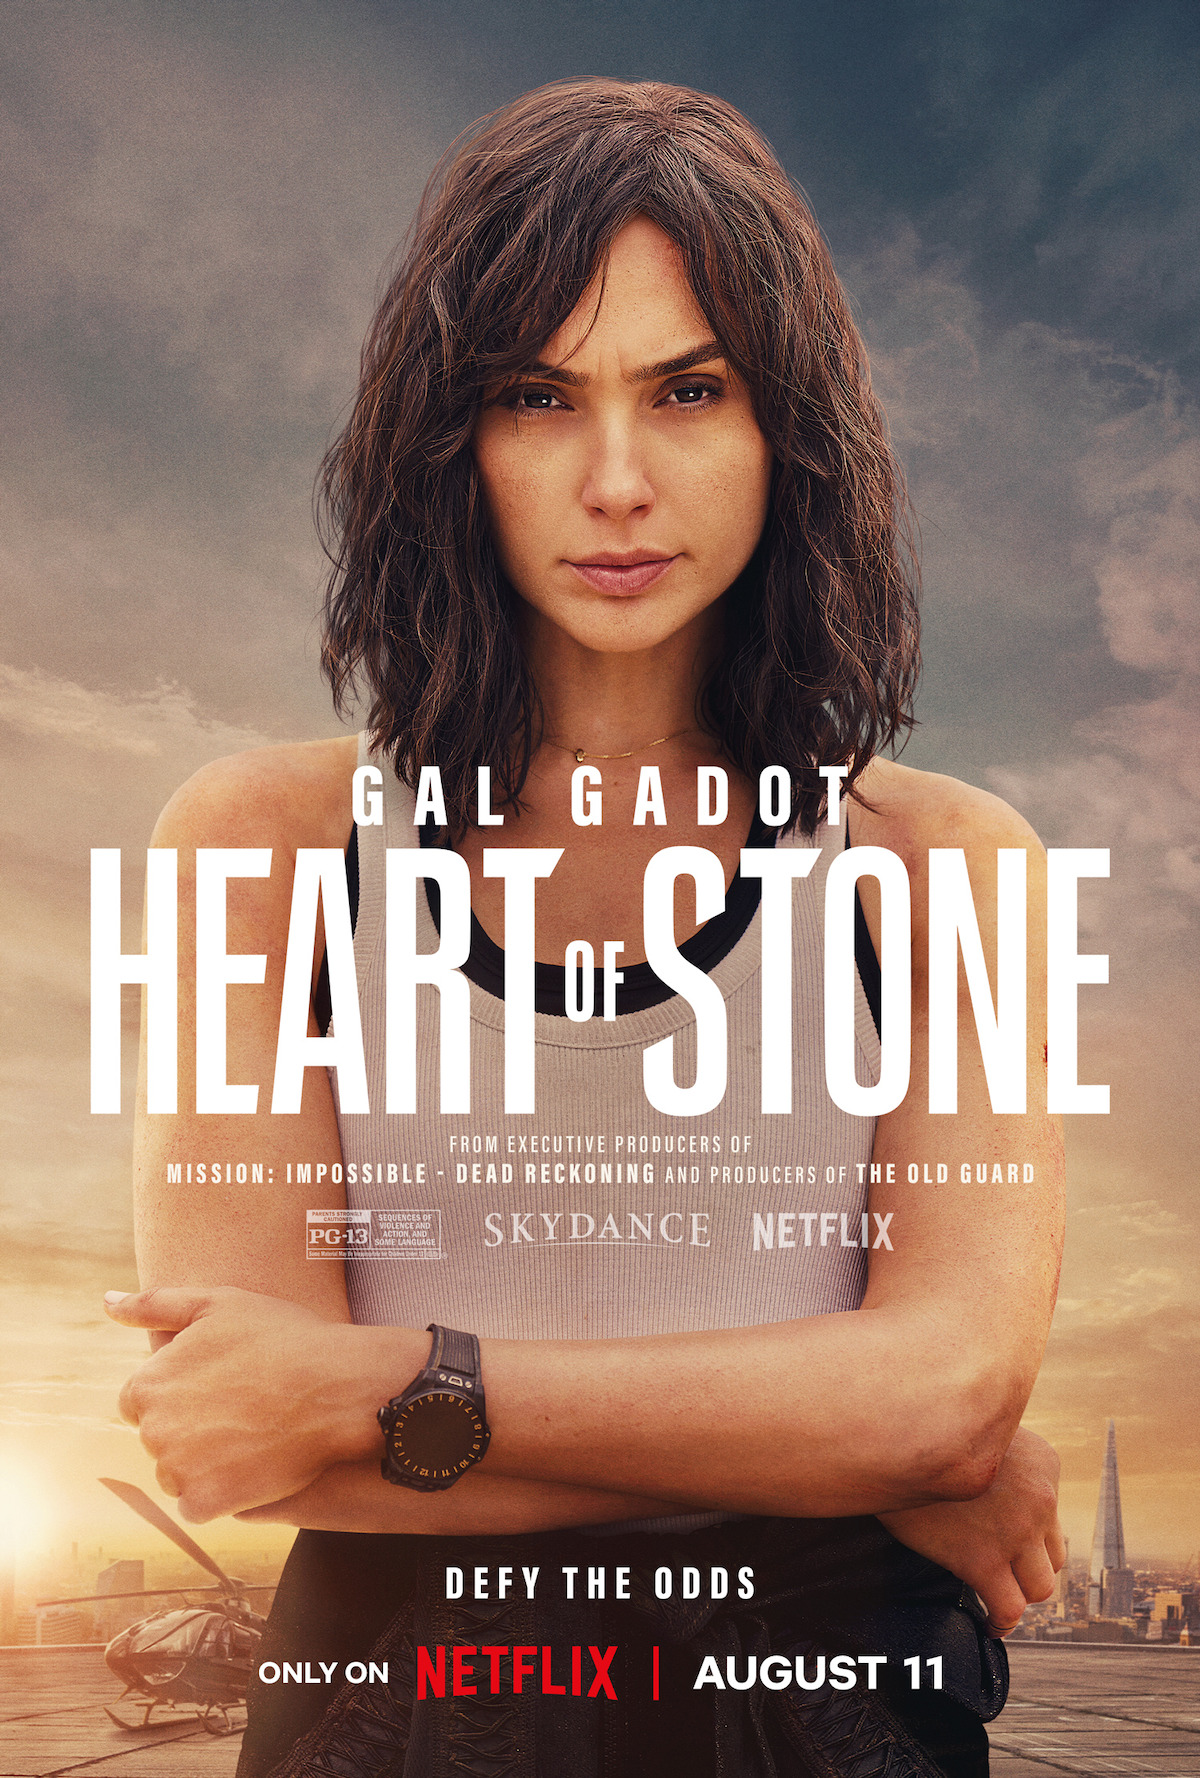 Heart of Stone Cast Gal Gadot, Jamie Dornan, Alia Bhatt, and Matthias Schweighöfer star in the New Thriller